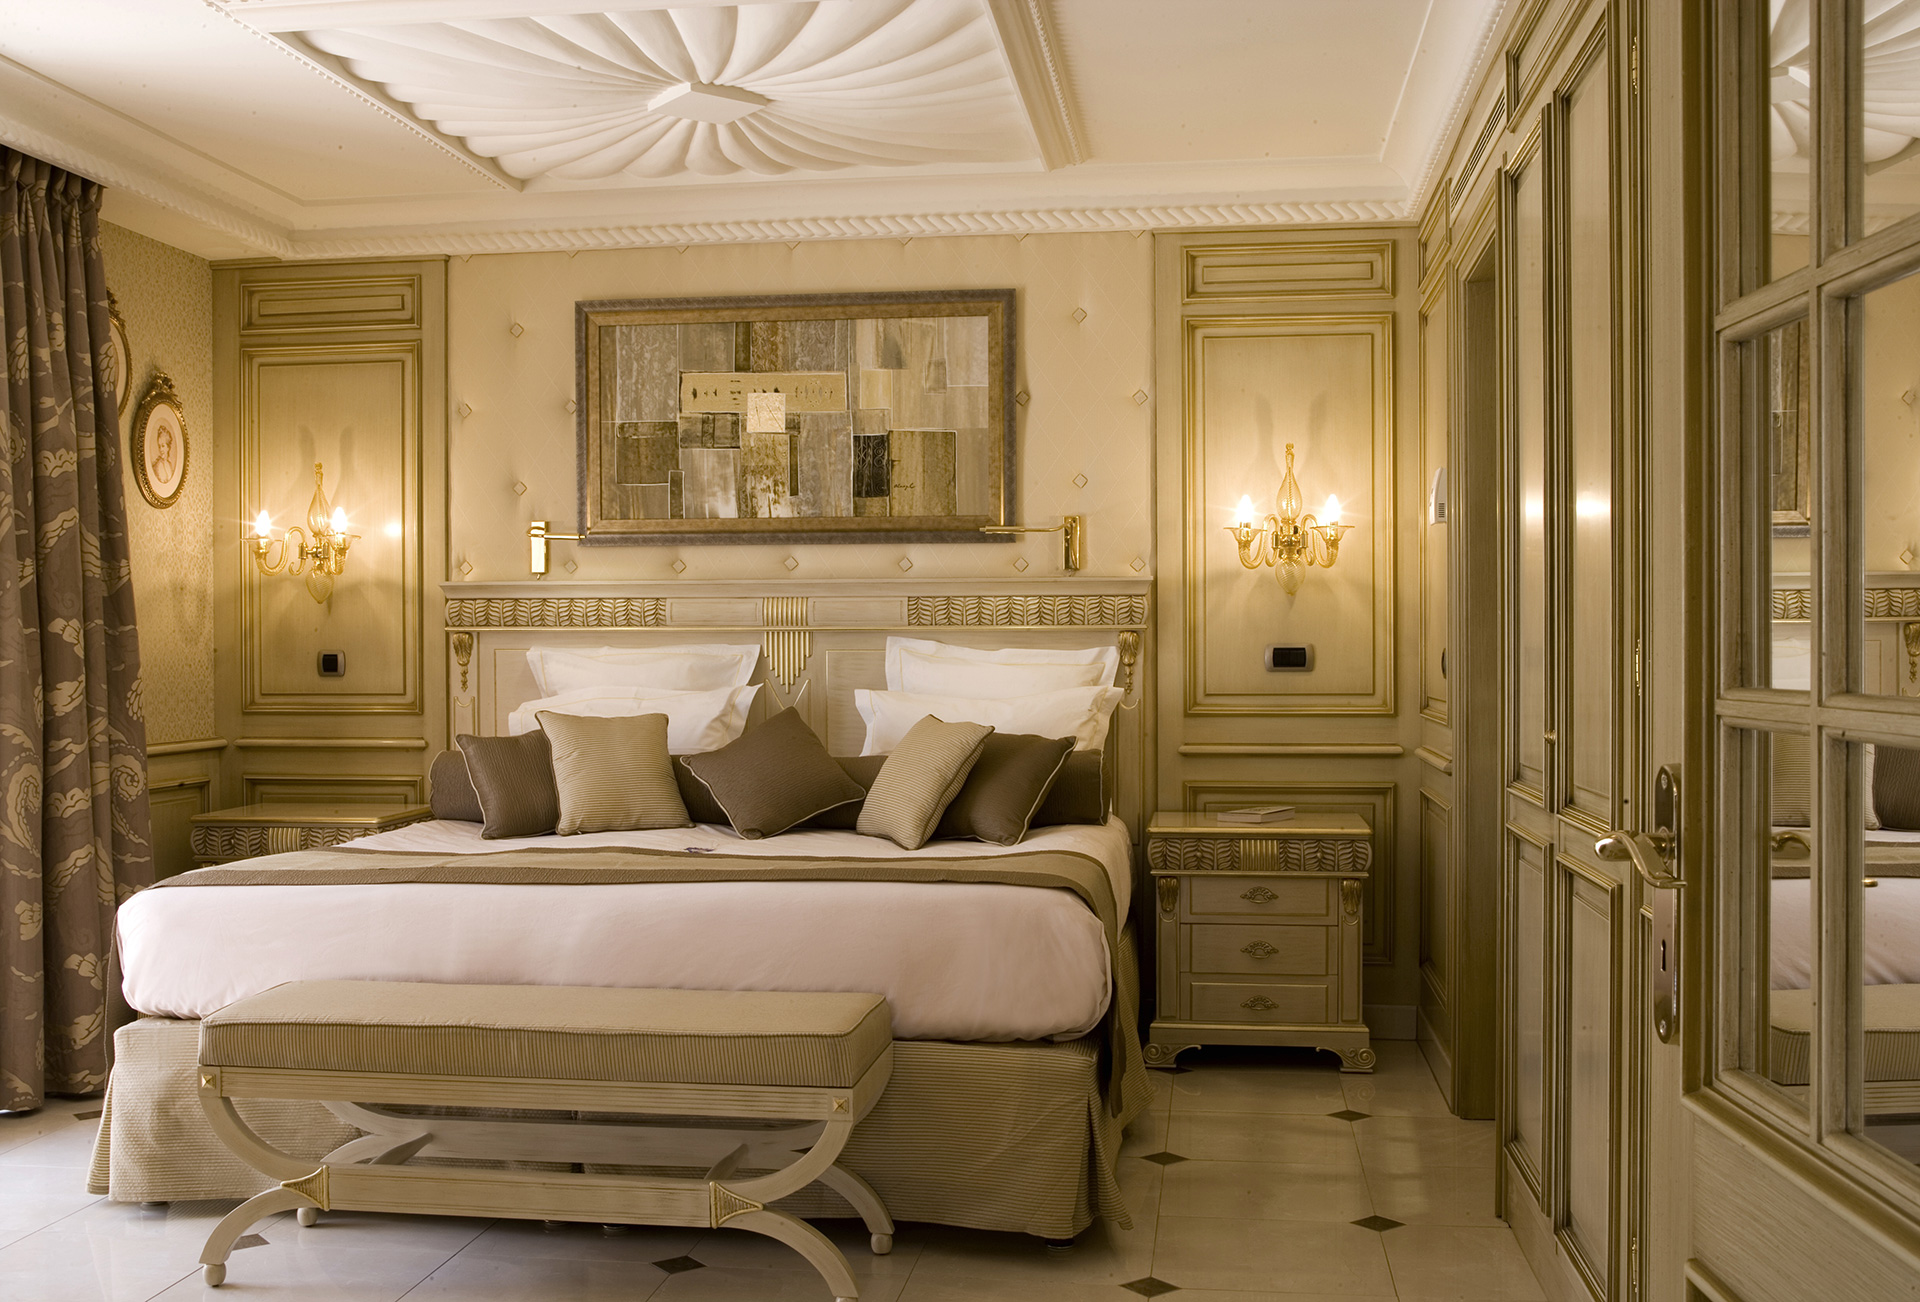 Bedroom for Club de Cavalière Hôtel & Spa 5*  by Borella Art Design